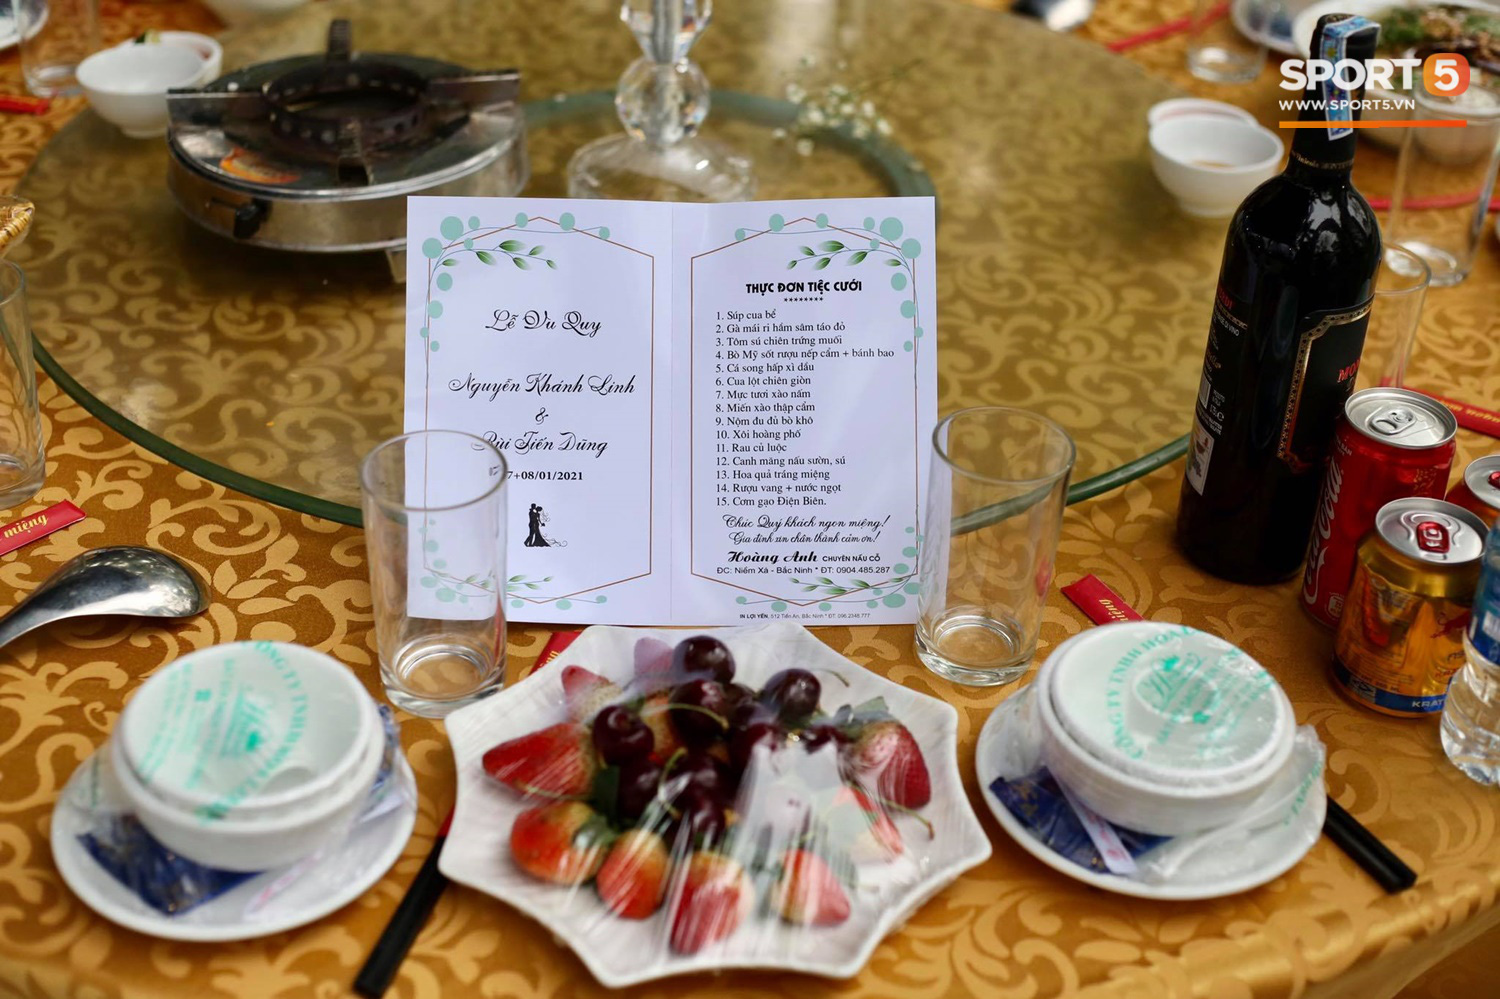 Đám cưới Tiến Dũng và Khánh Linh ở Bắc Ninh: Mời hơn 1500 khách, quà cảm ơn trao tay ngọt ngào - Ảnh 7.